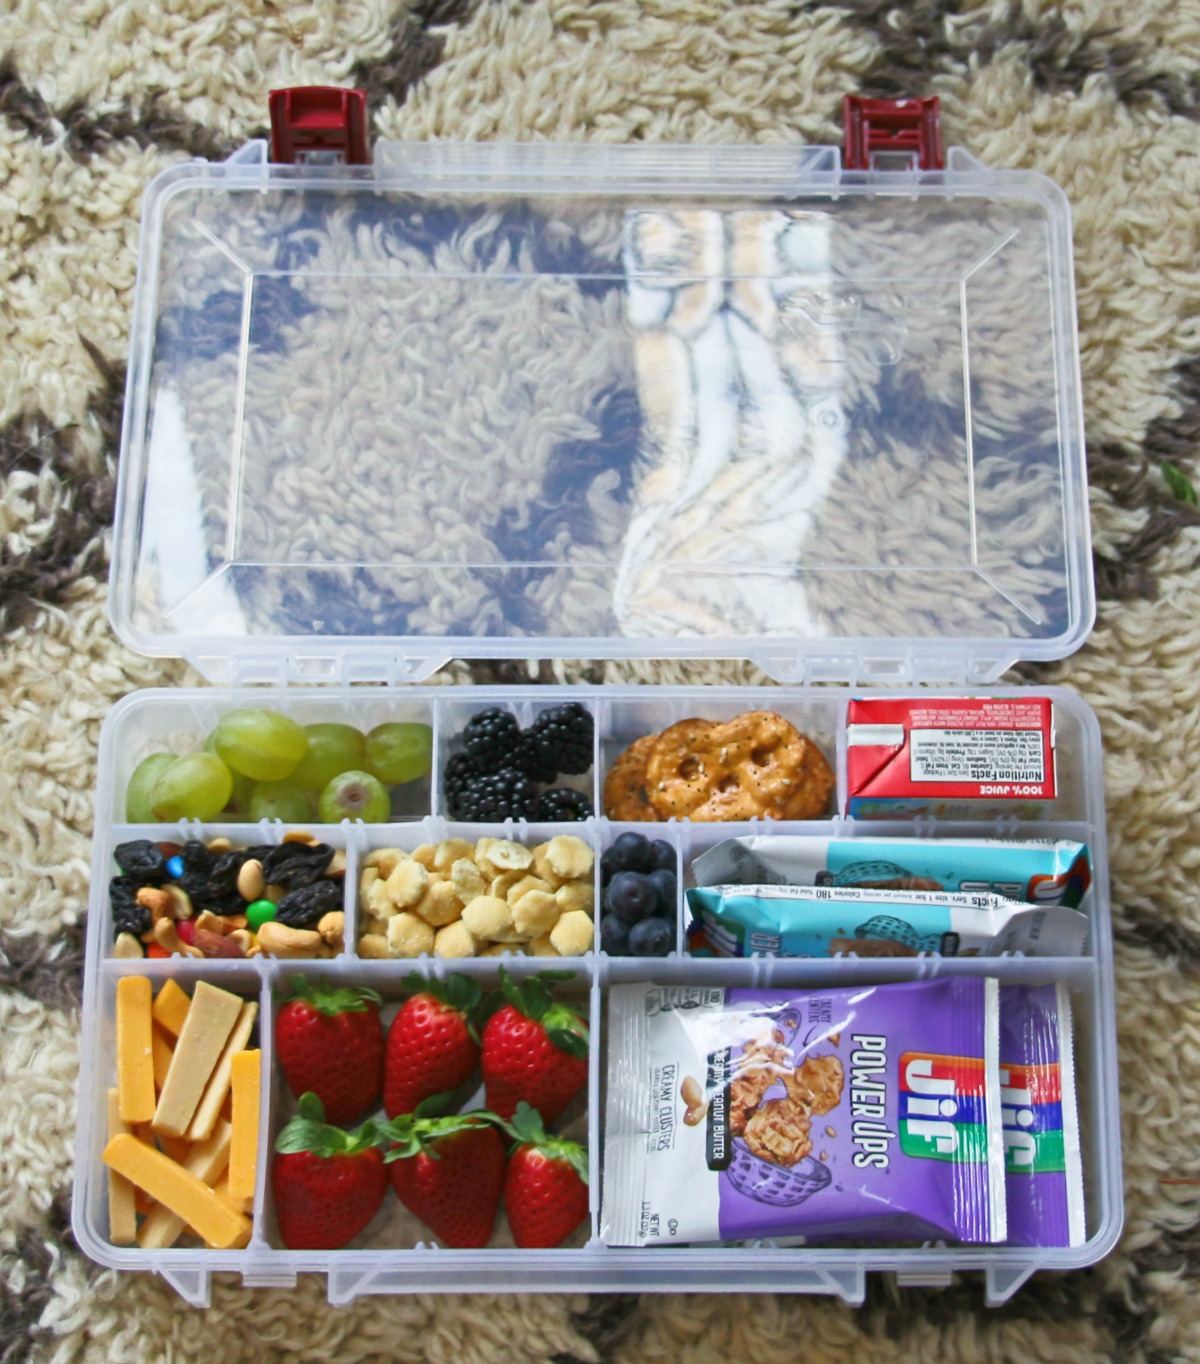 DIY Travel Snack Kit For Kids